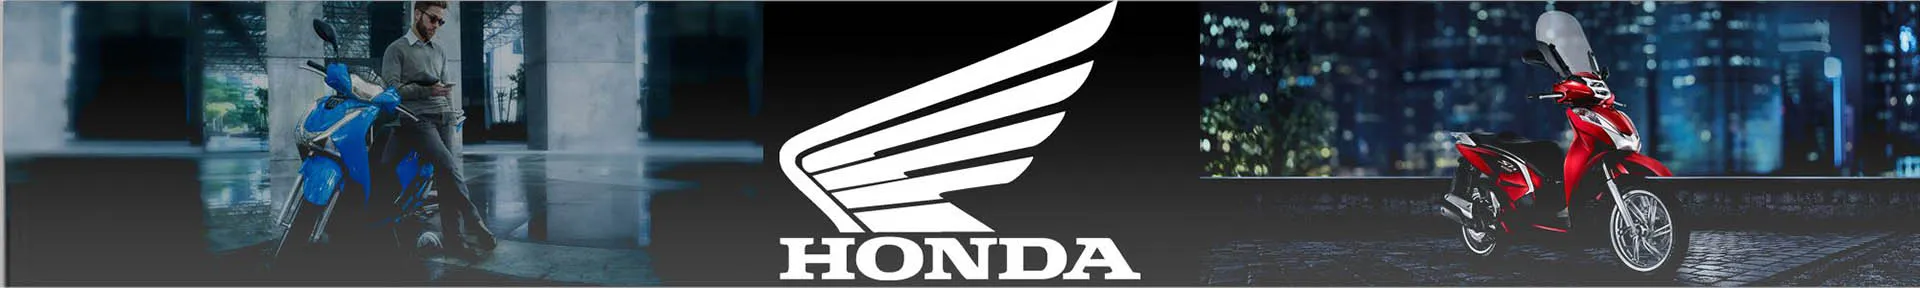 Sobre a ESTRELA H, sua concessionária Honda Motos